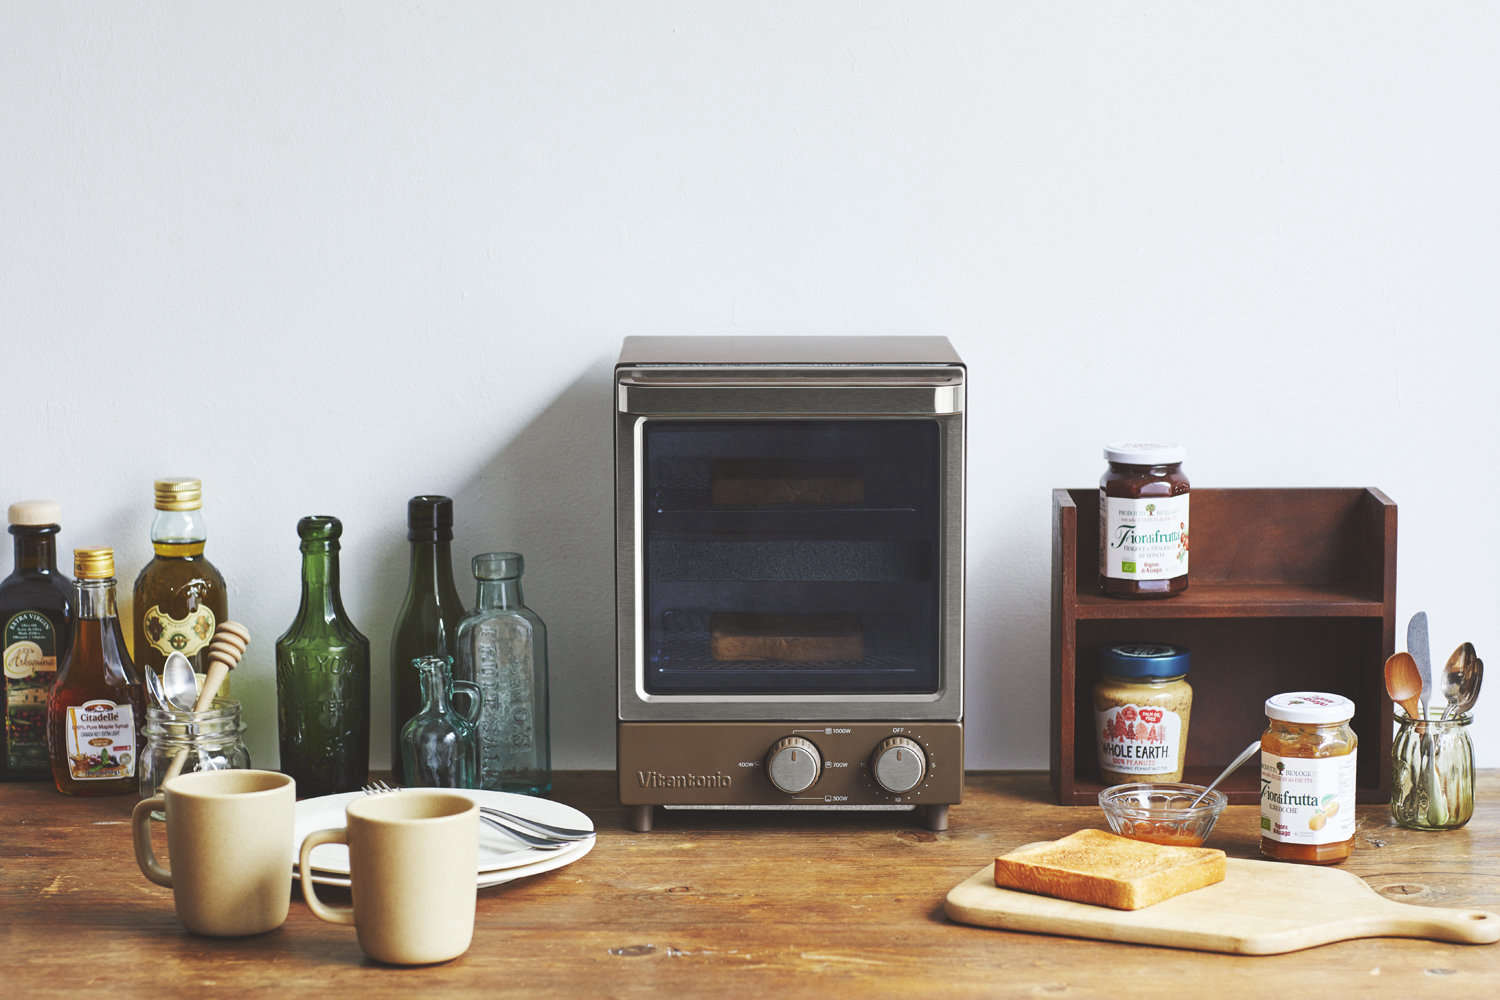 https://www.remodelista.com/wp-content/uploads/2019/03/vitantonio-vertical-type-toaster-oven-brown.jpg